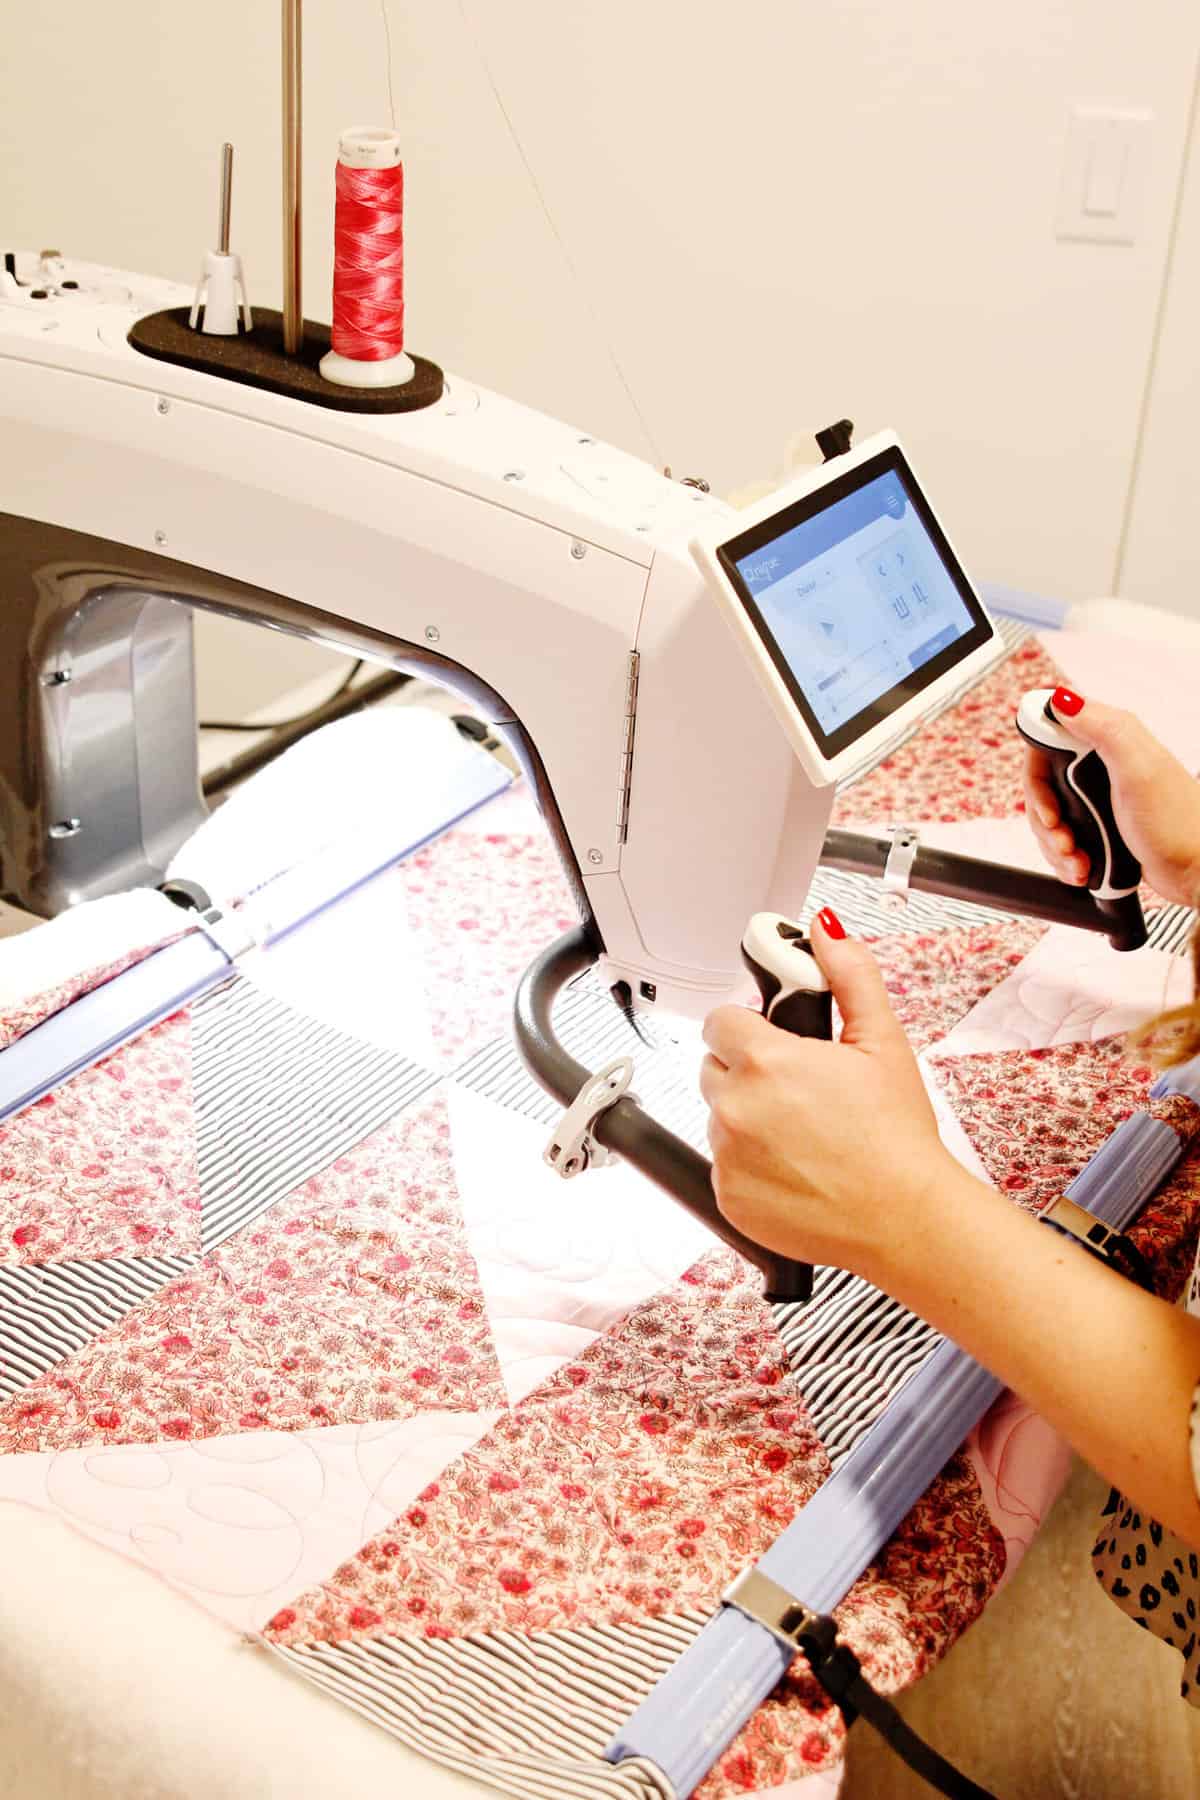 silk screen printing kit - DIY red panda plush toys - see kate sew